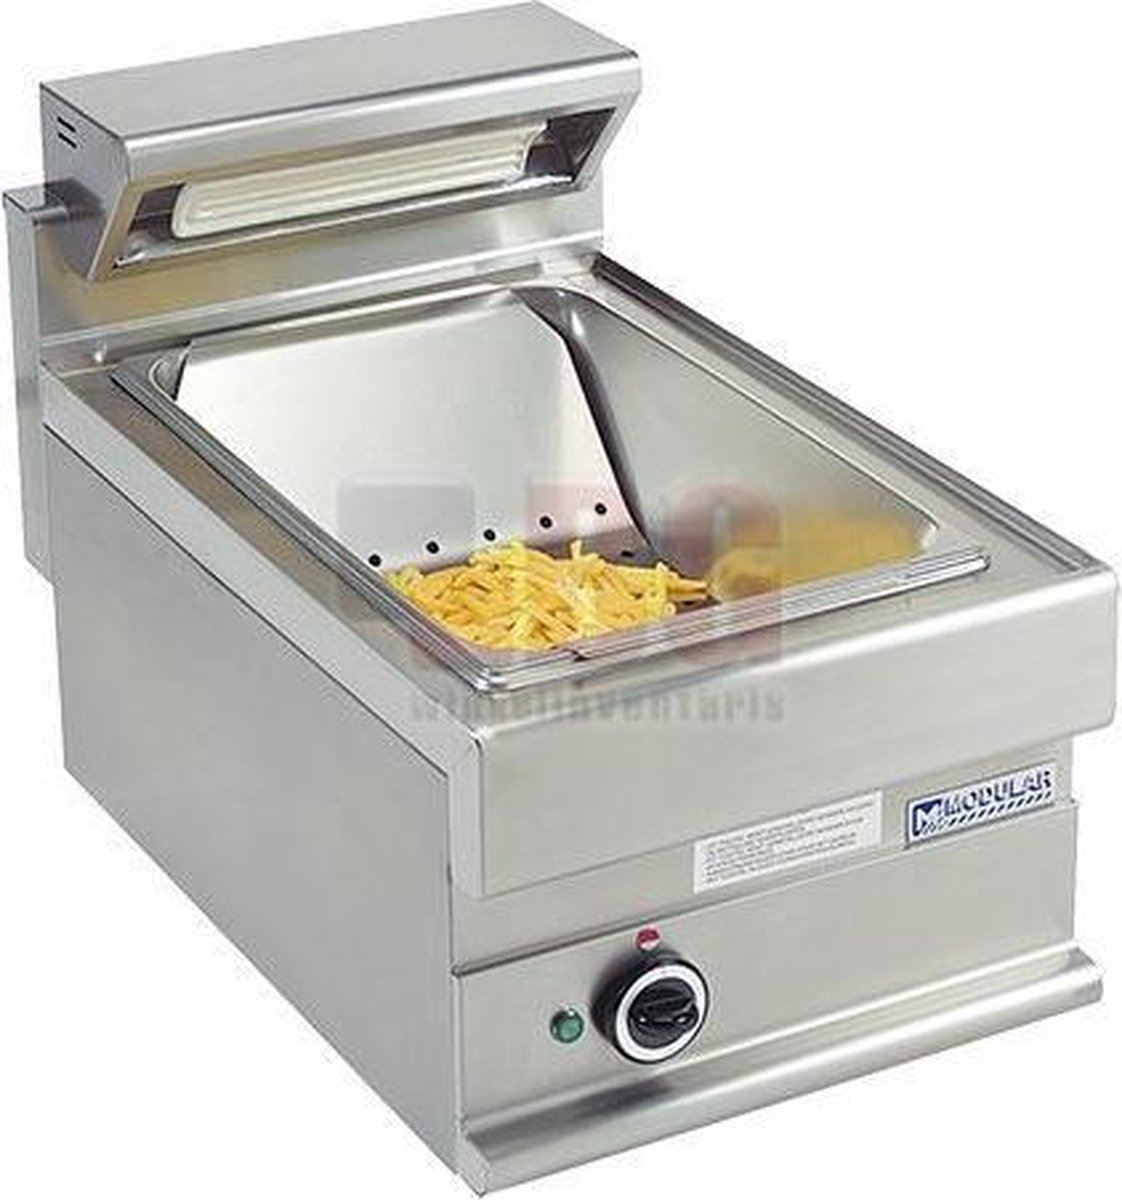 Modular 650 function friet warmhoudapparaat met uitlekbak